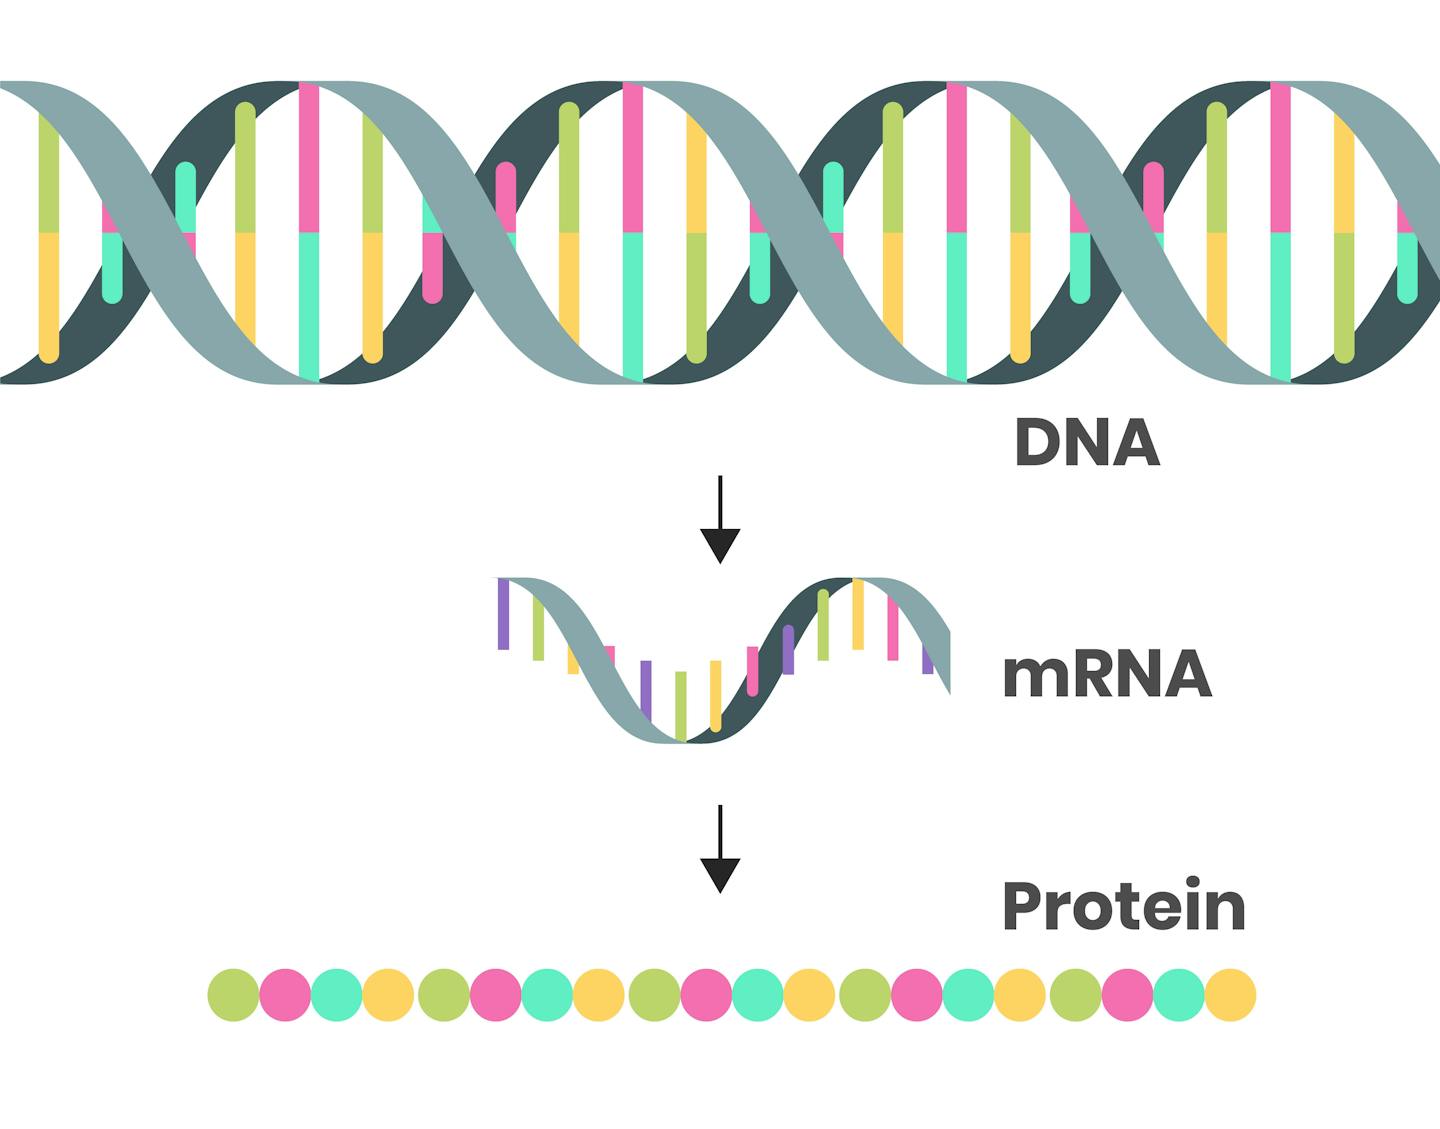 رسم تخطيطي يوضح كيف يصبح الحمض النووي الريبوزي منقوص الأكسجين (mRNA) والذي يتحول إلى بروتينات.